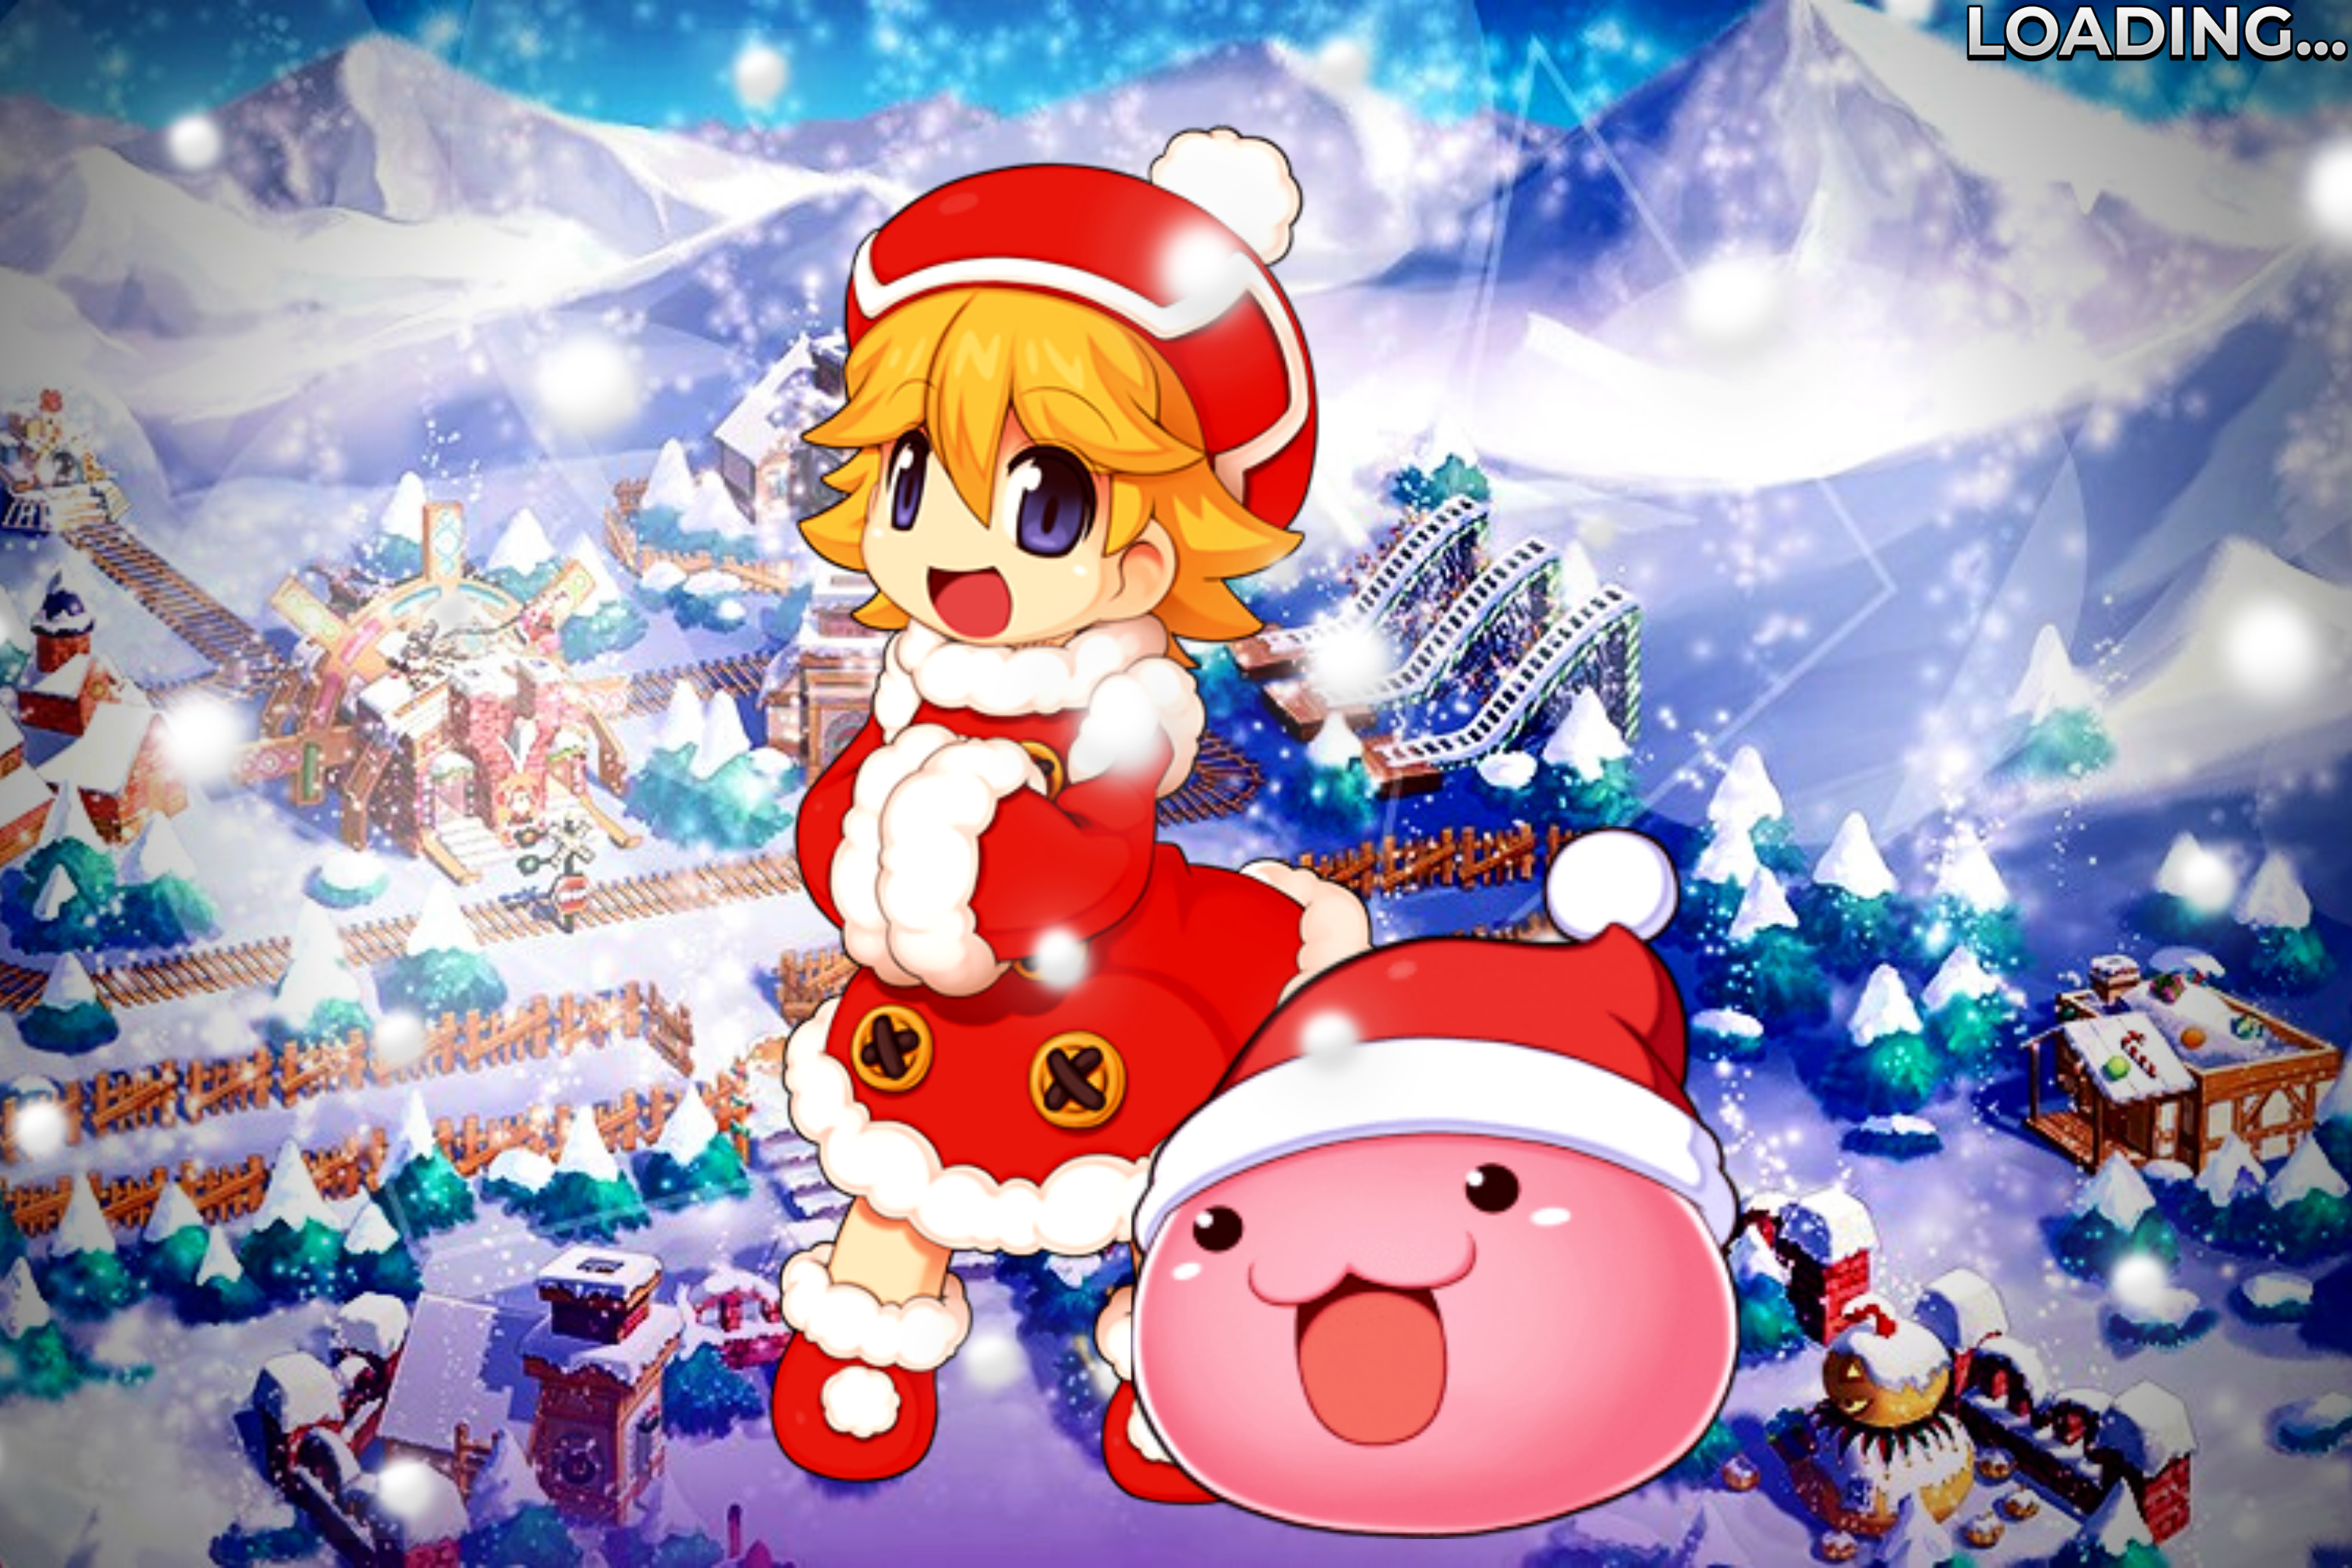 Natsukashi Christmas Themed Loading Screens